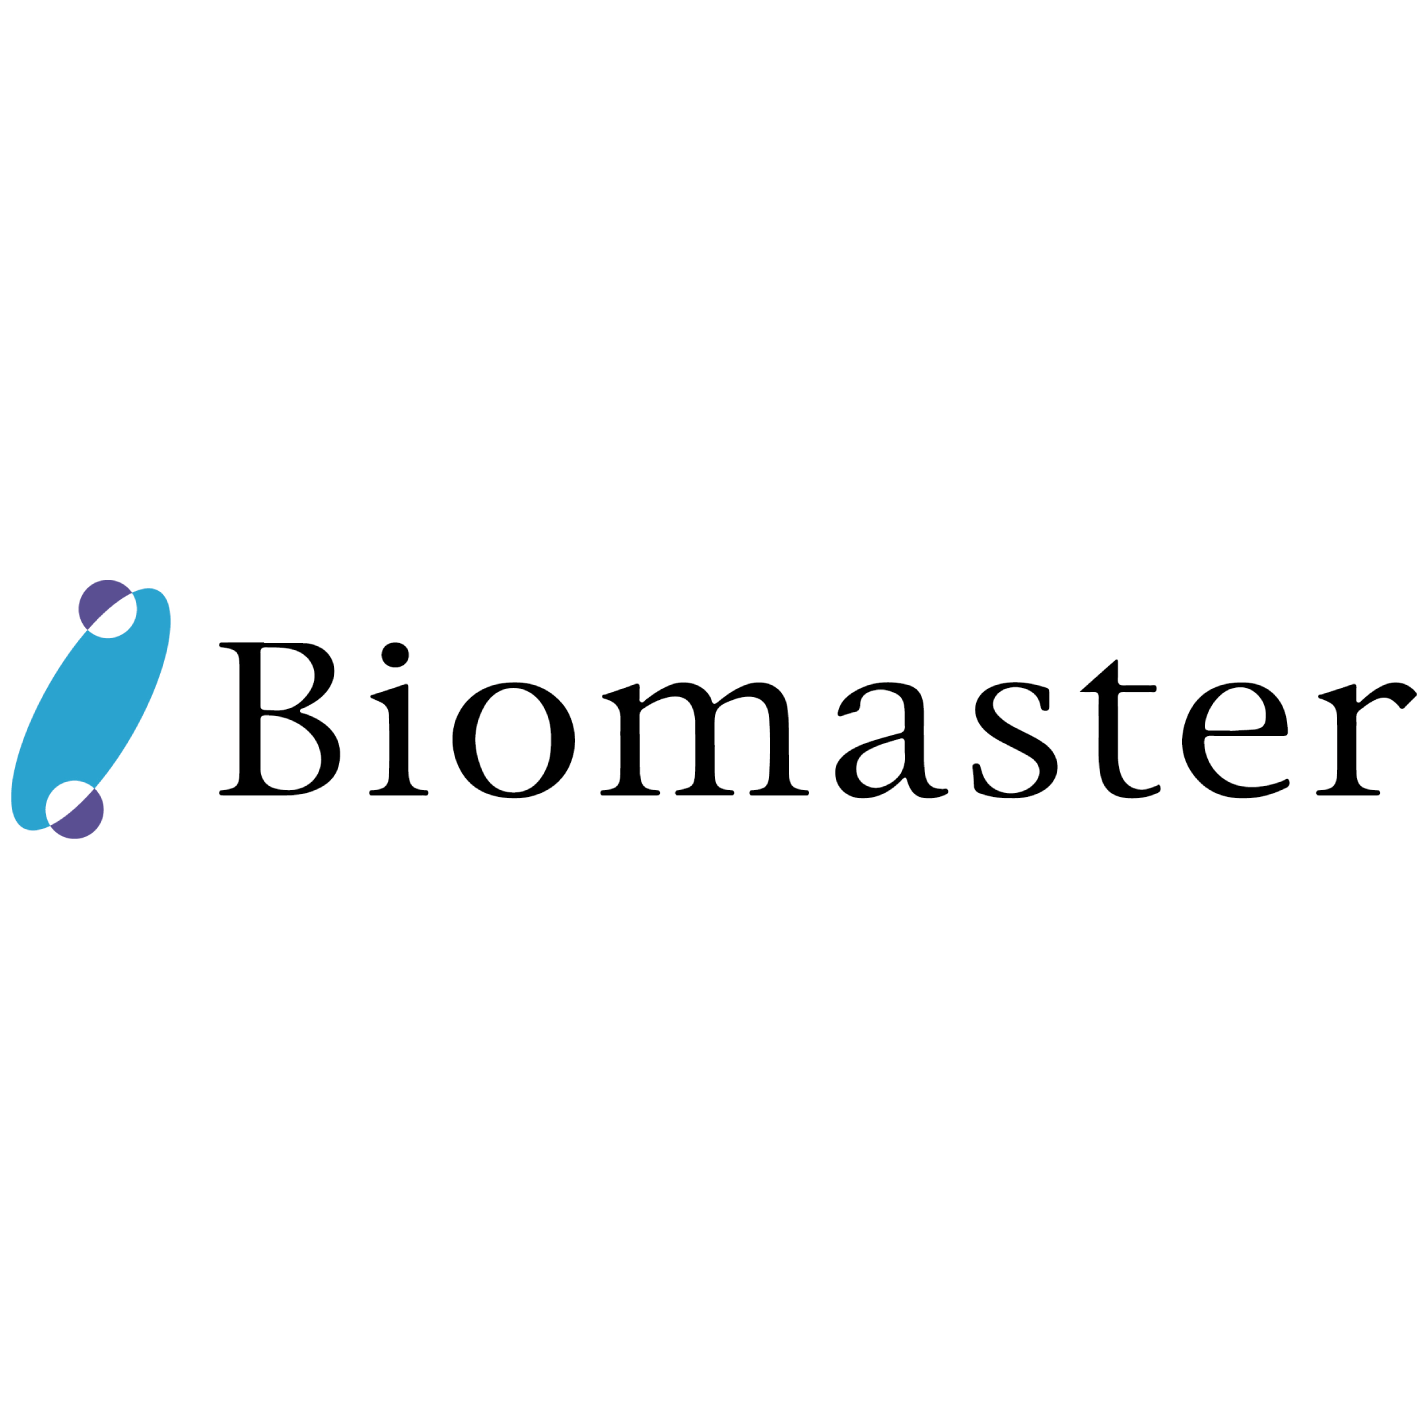 Biomaster,Inc.